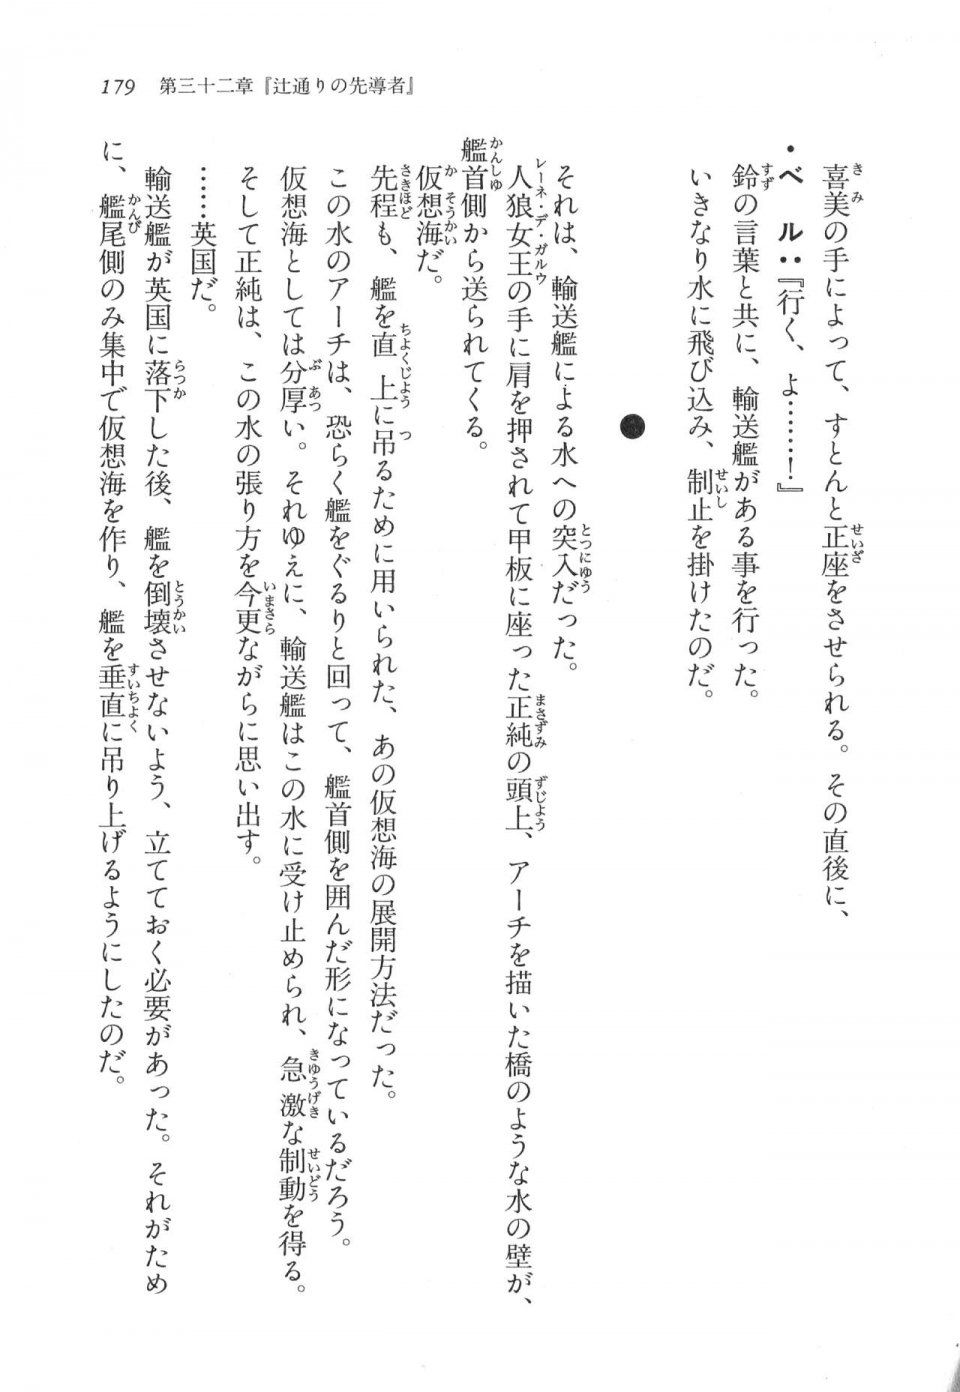 Kyoukai Senjou no Horizon LN Vol 17(7B) - Photo #179